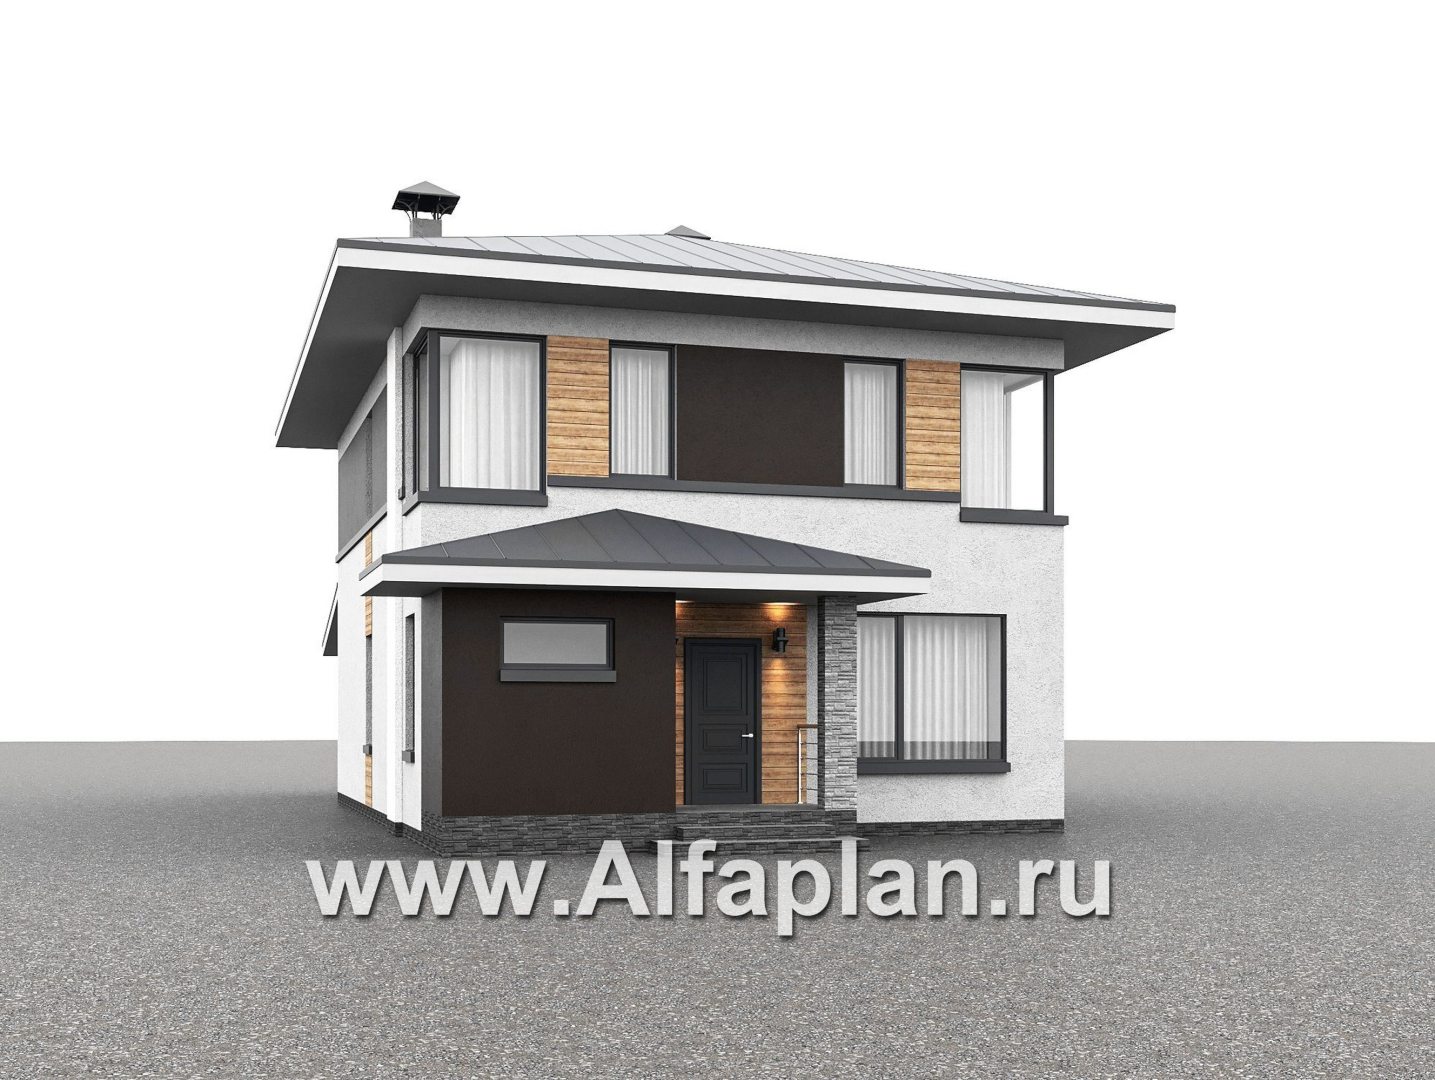 Проекты домов Альфаплан - "Генезис" - проект дома, 2 этажа, с террасой в стиле Райта - дополнительное изображение №1